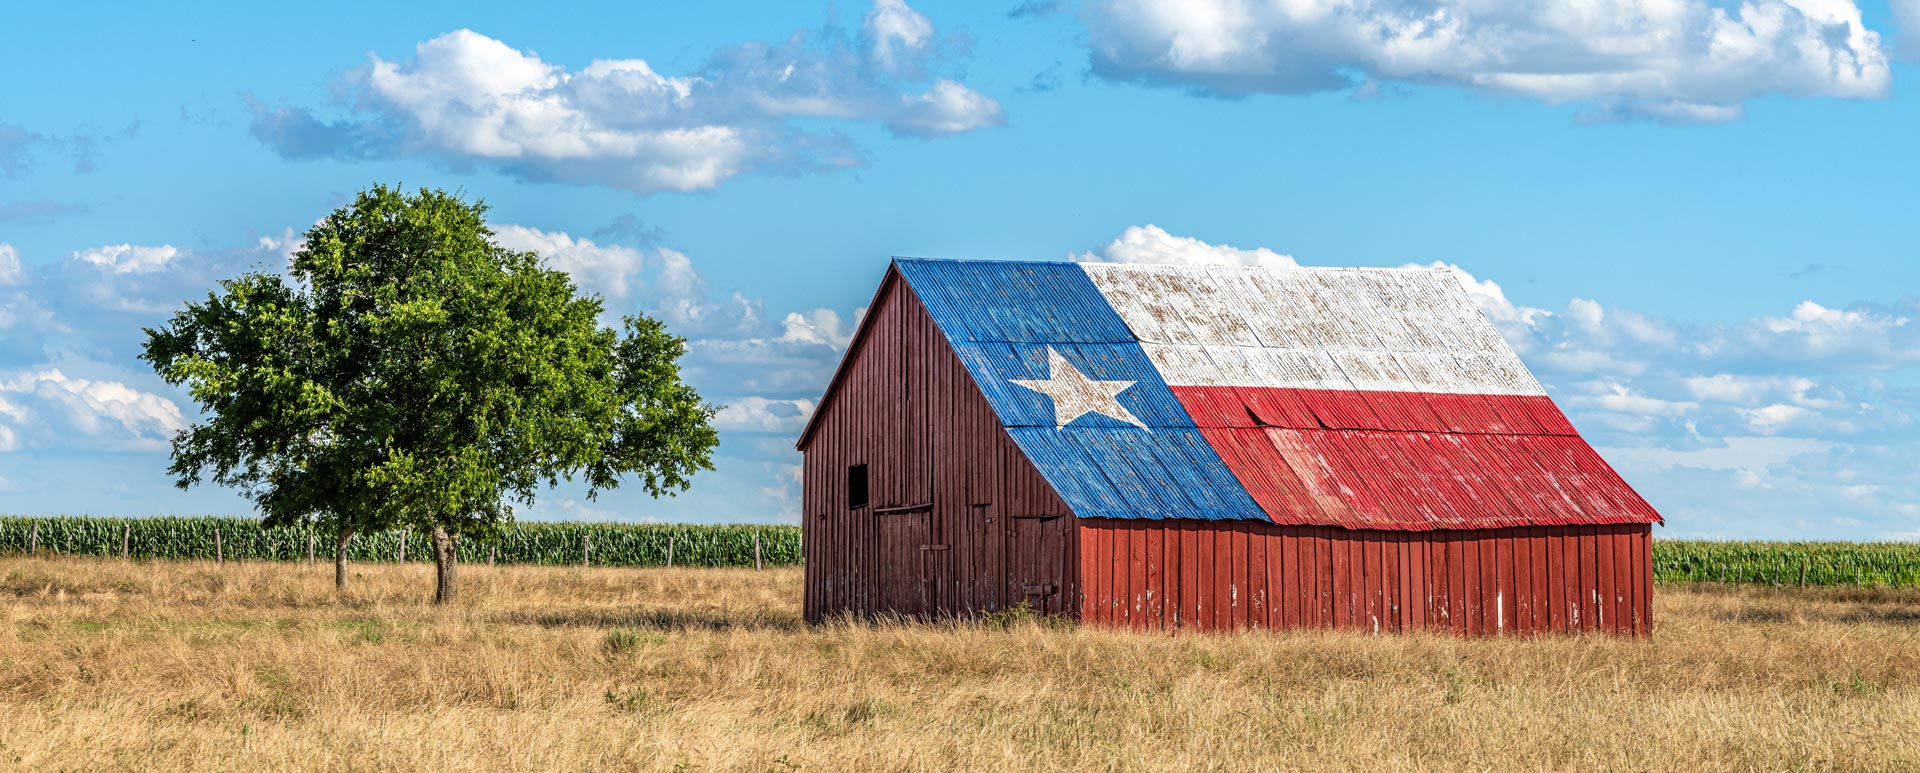 Barn with Texas Flag